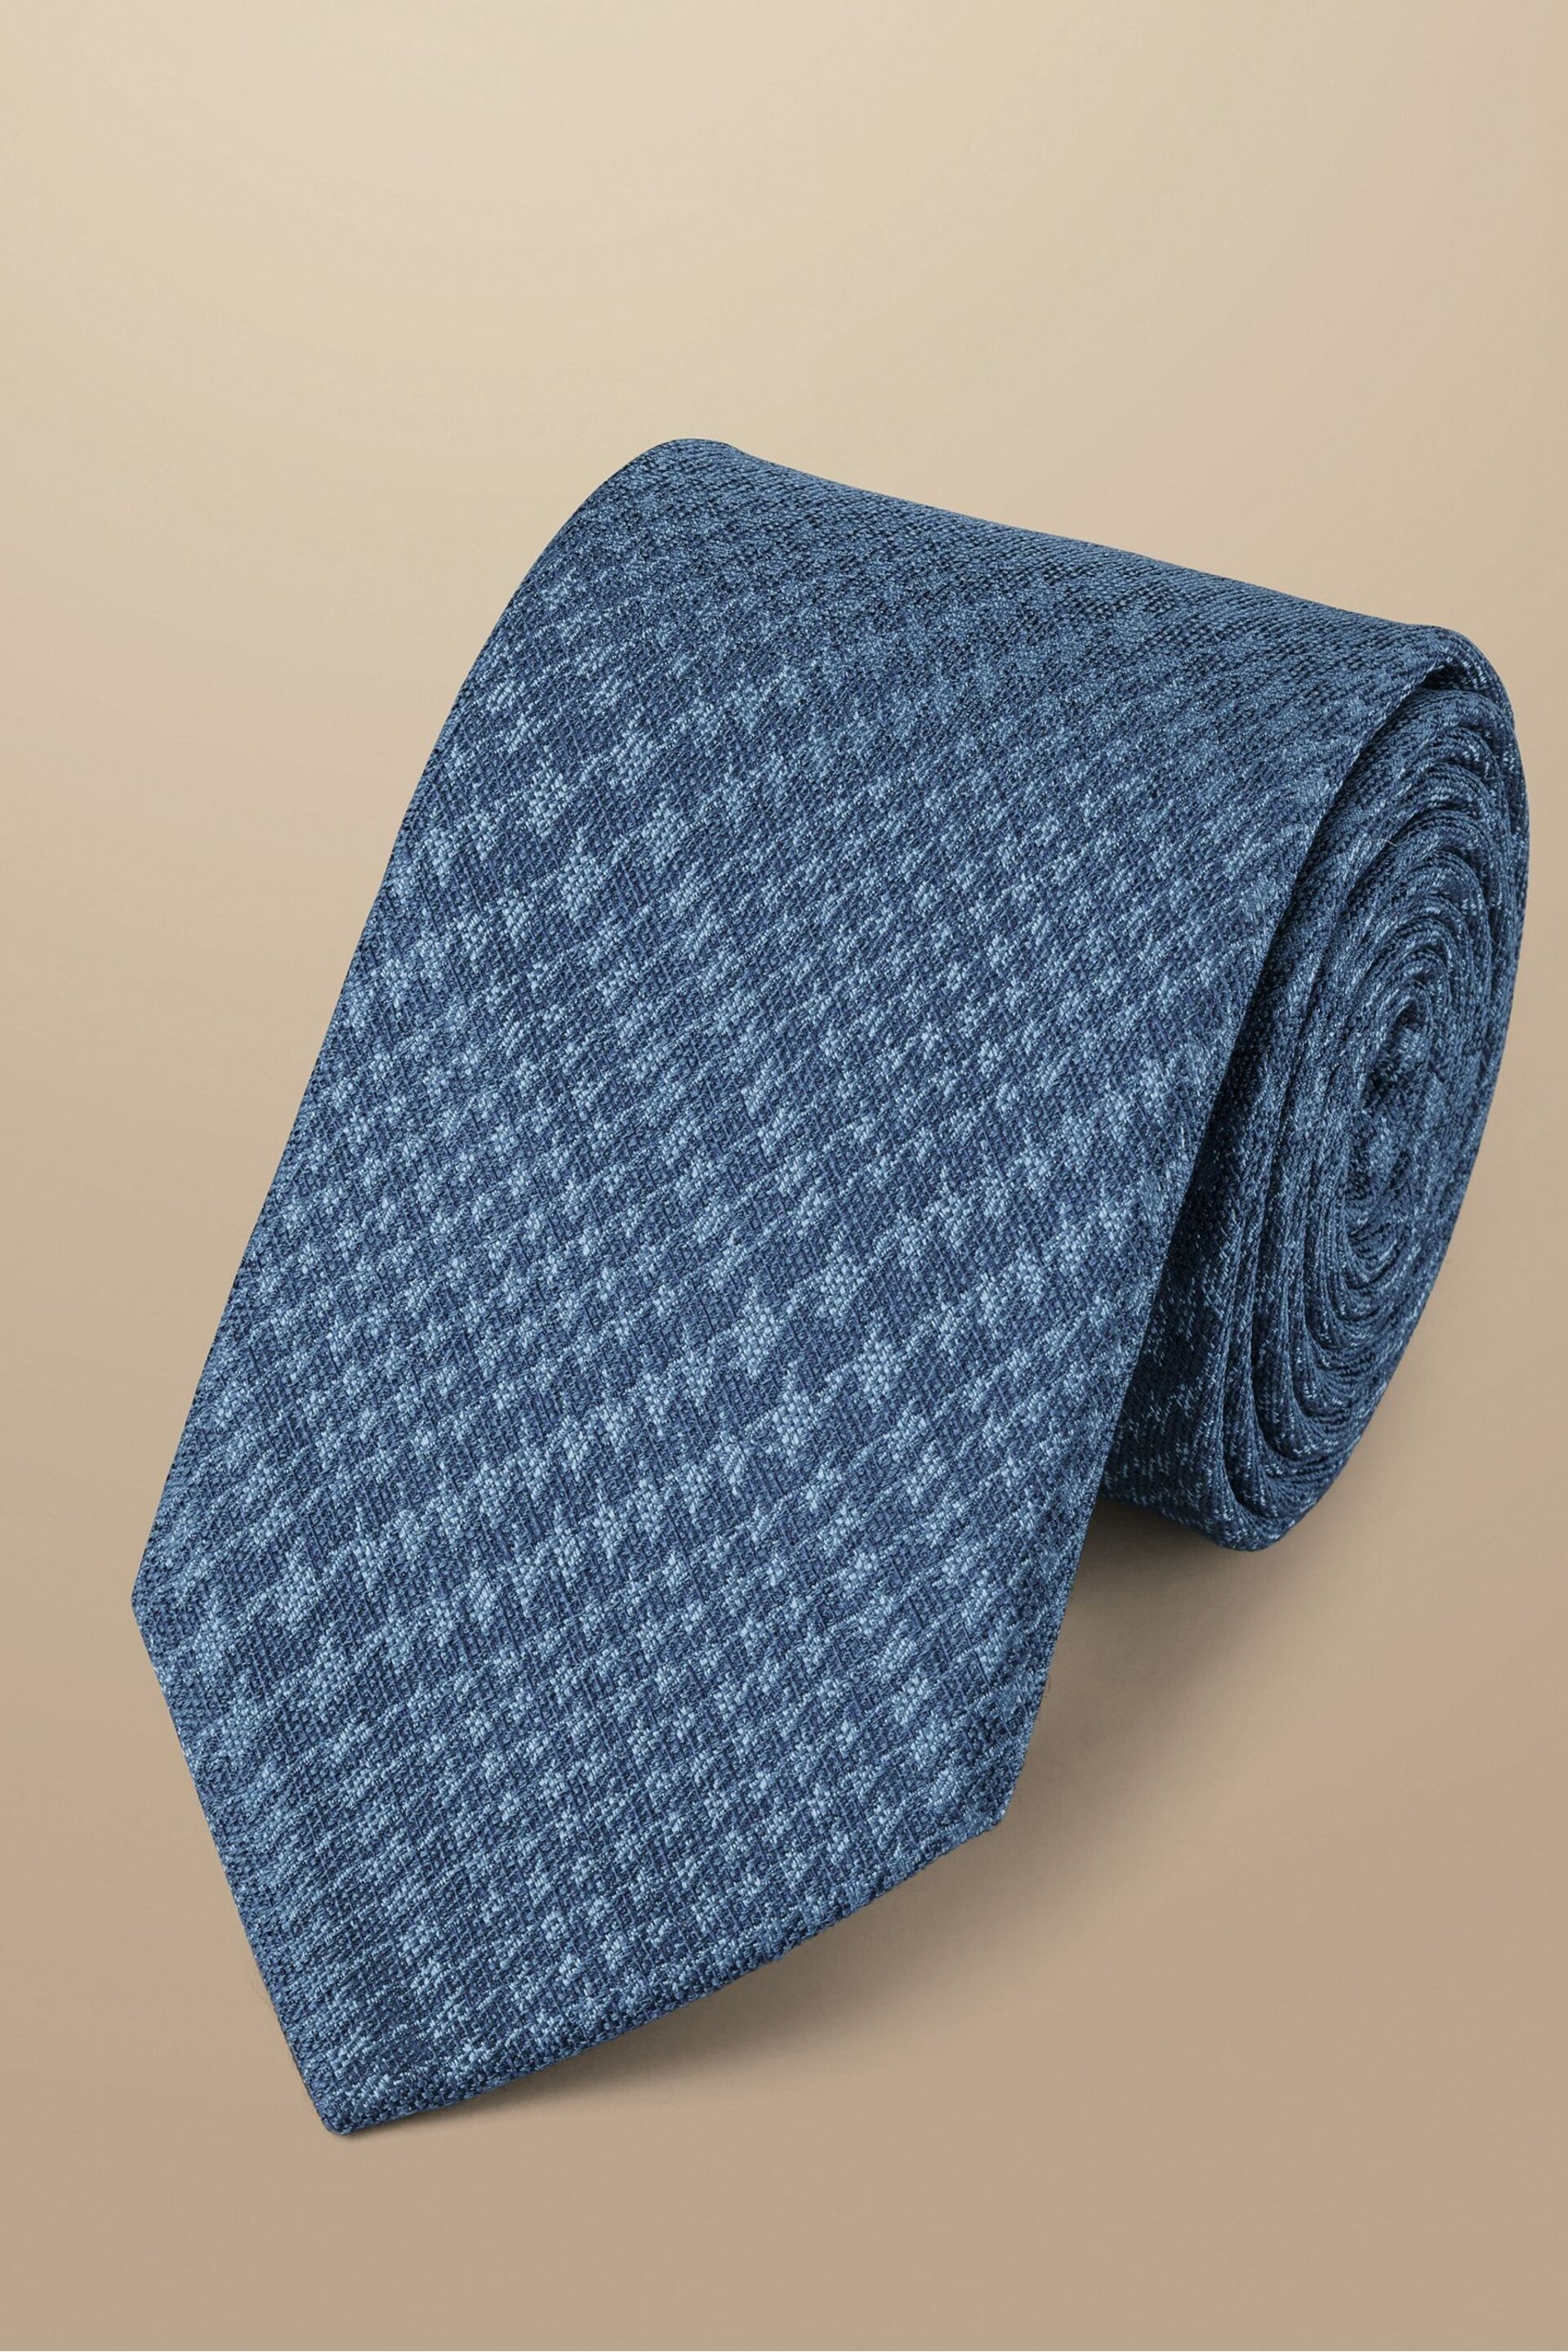 Charles Tyrwhitt Blue Silk Linen Tie - Image 1 of 2